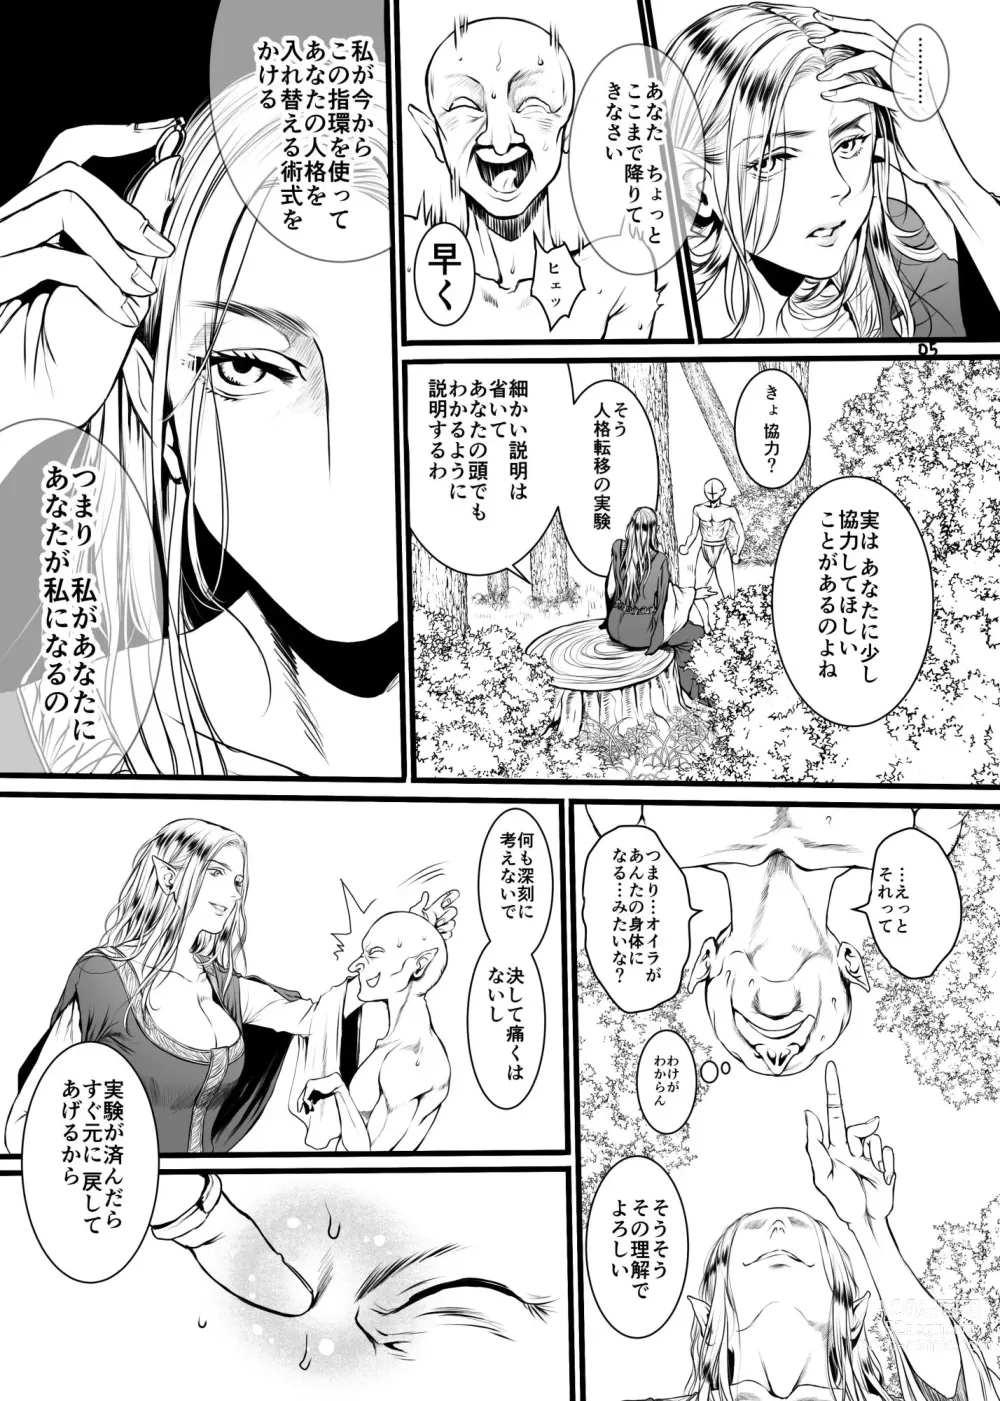 Page 2 of doujinshi Kansei o Akirameta TSF Manga